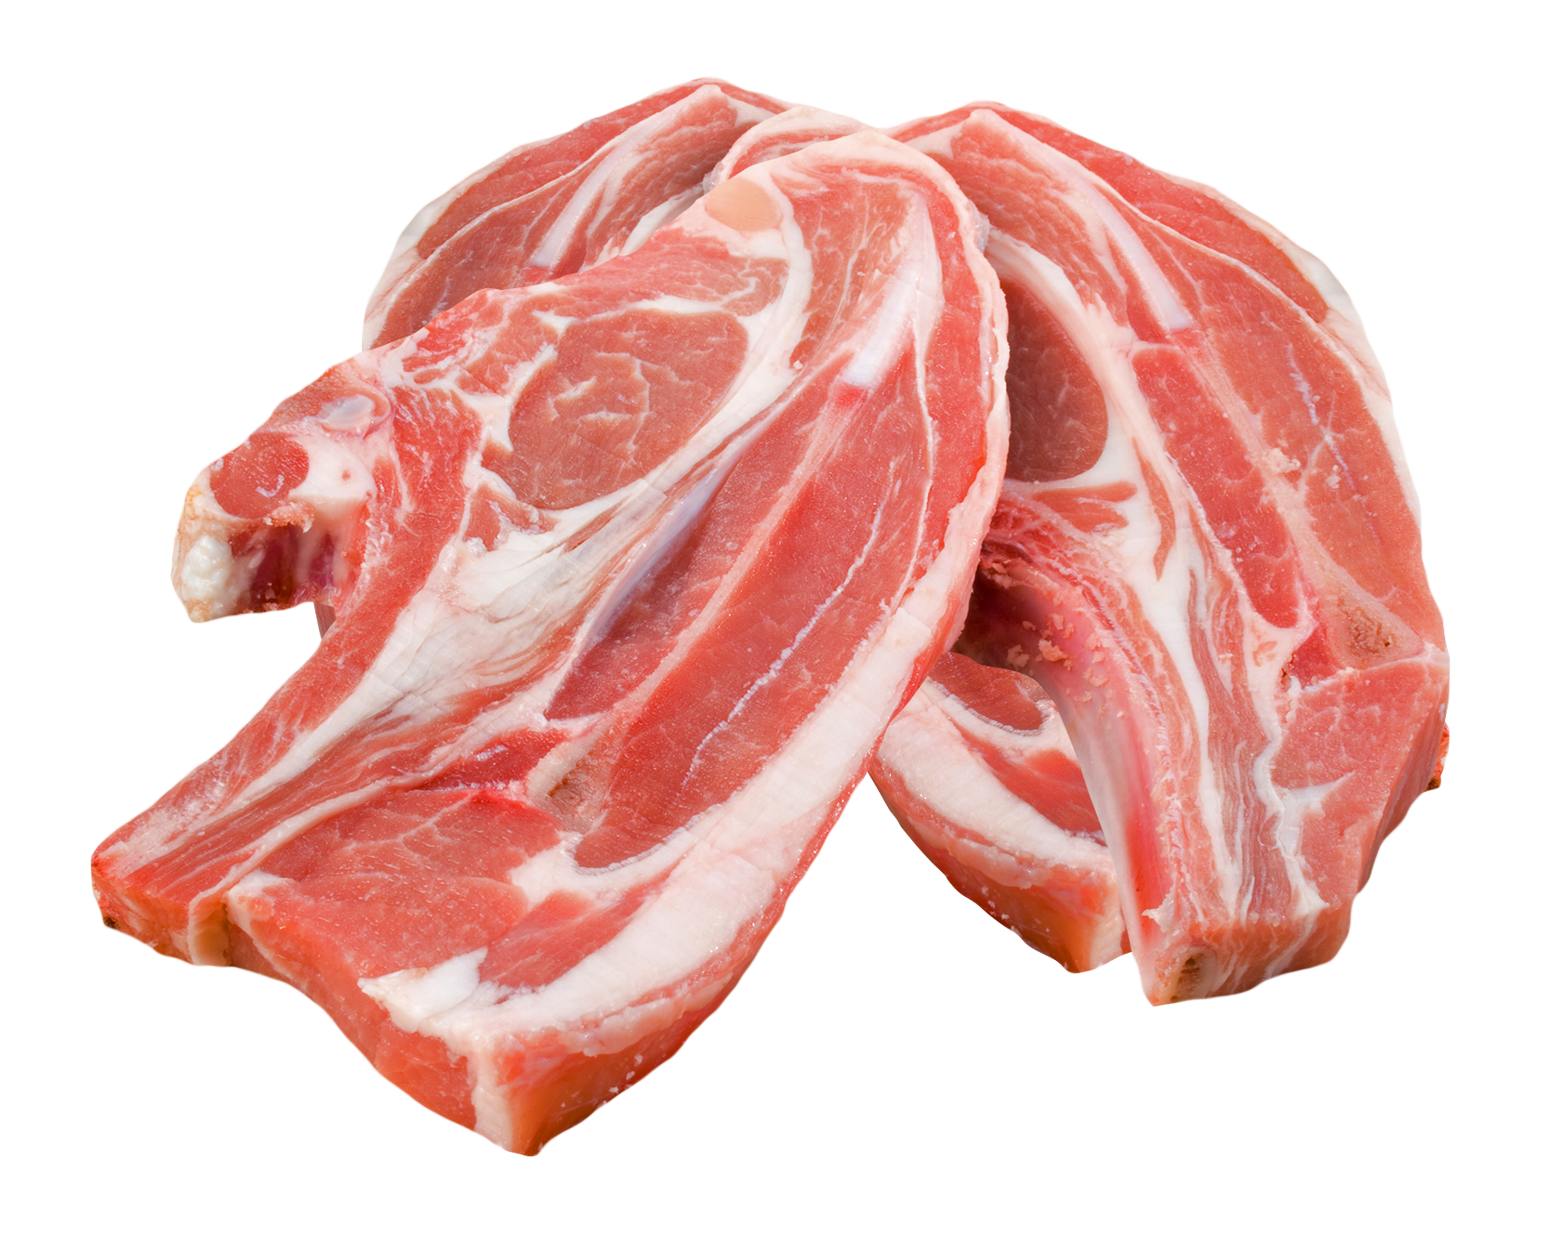 Rundvlees PNG -afbeeldingsbestand